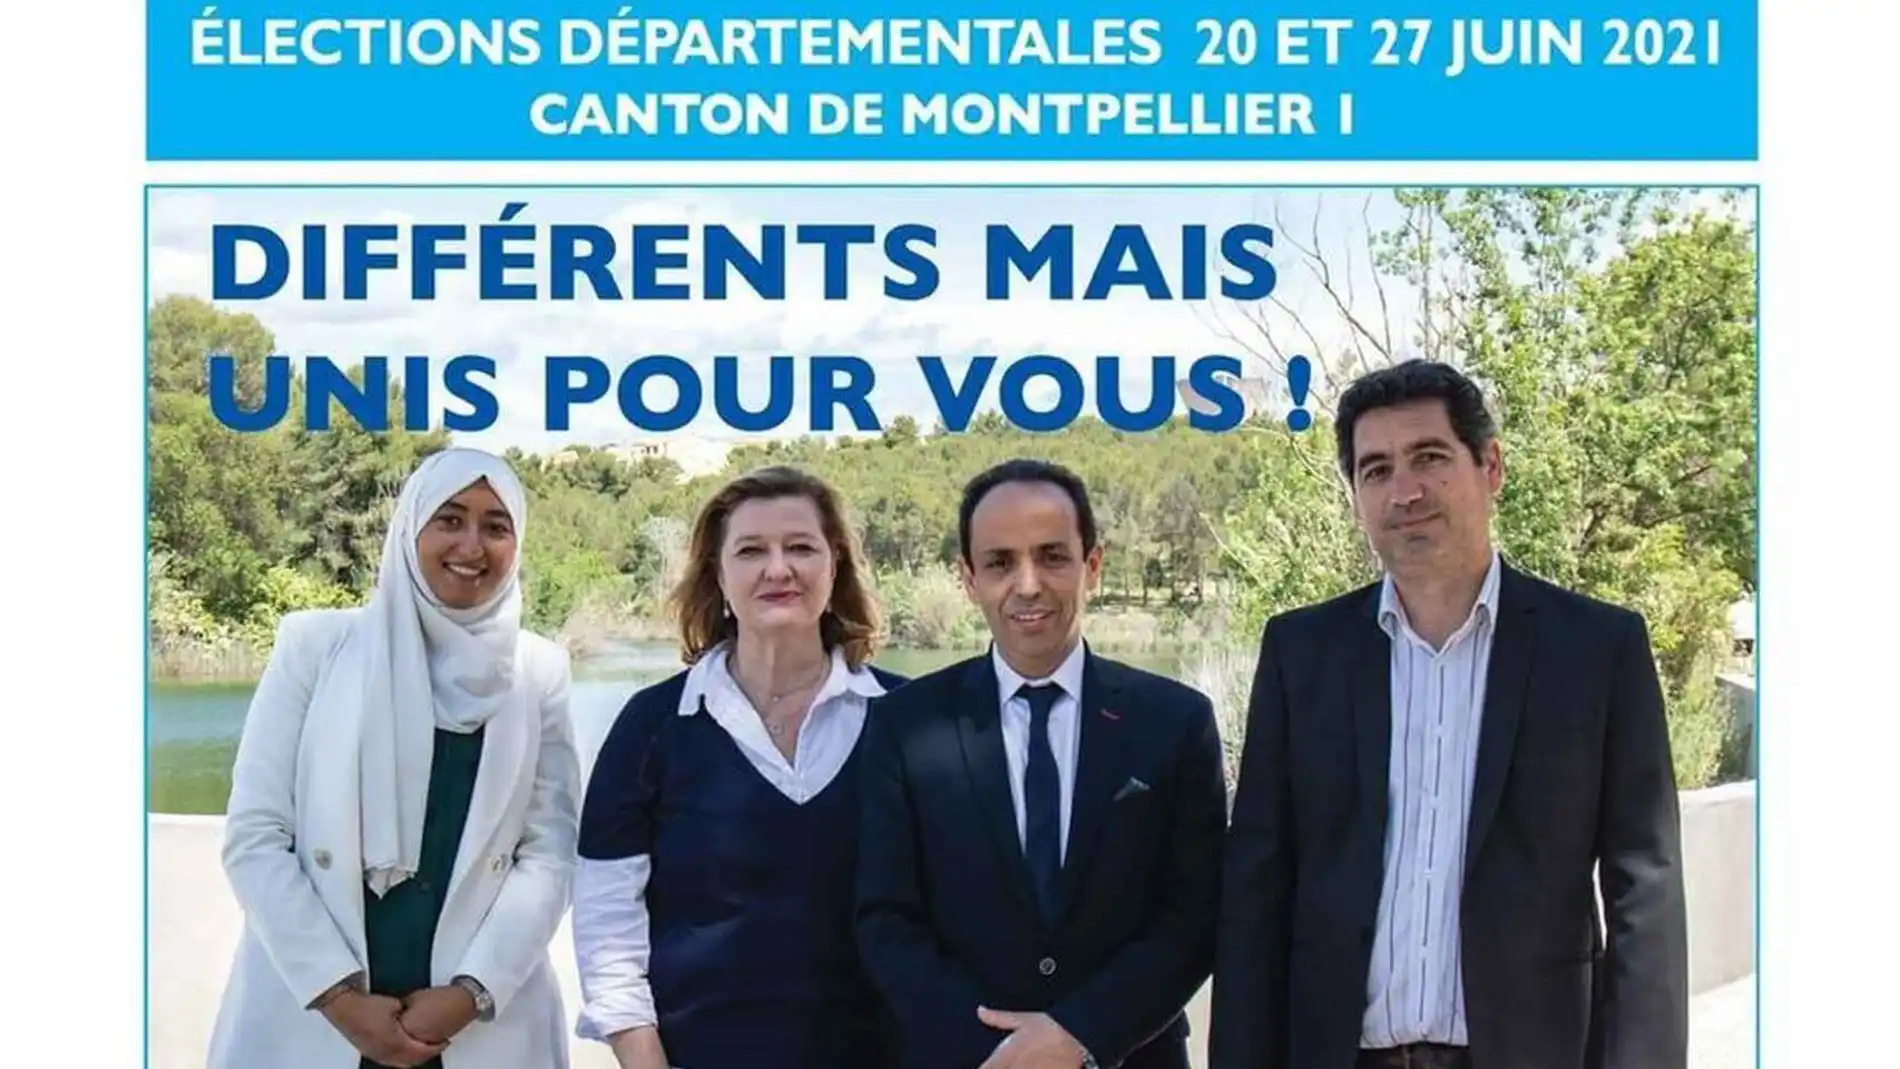 El cartel electoral que ha provocado la polémica en Francia